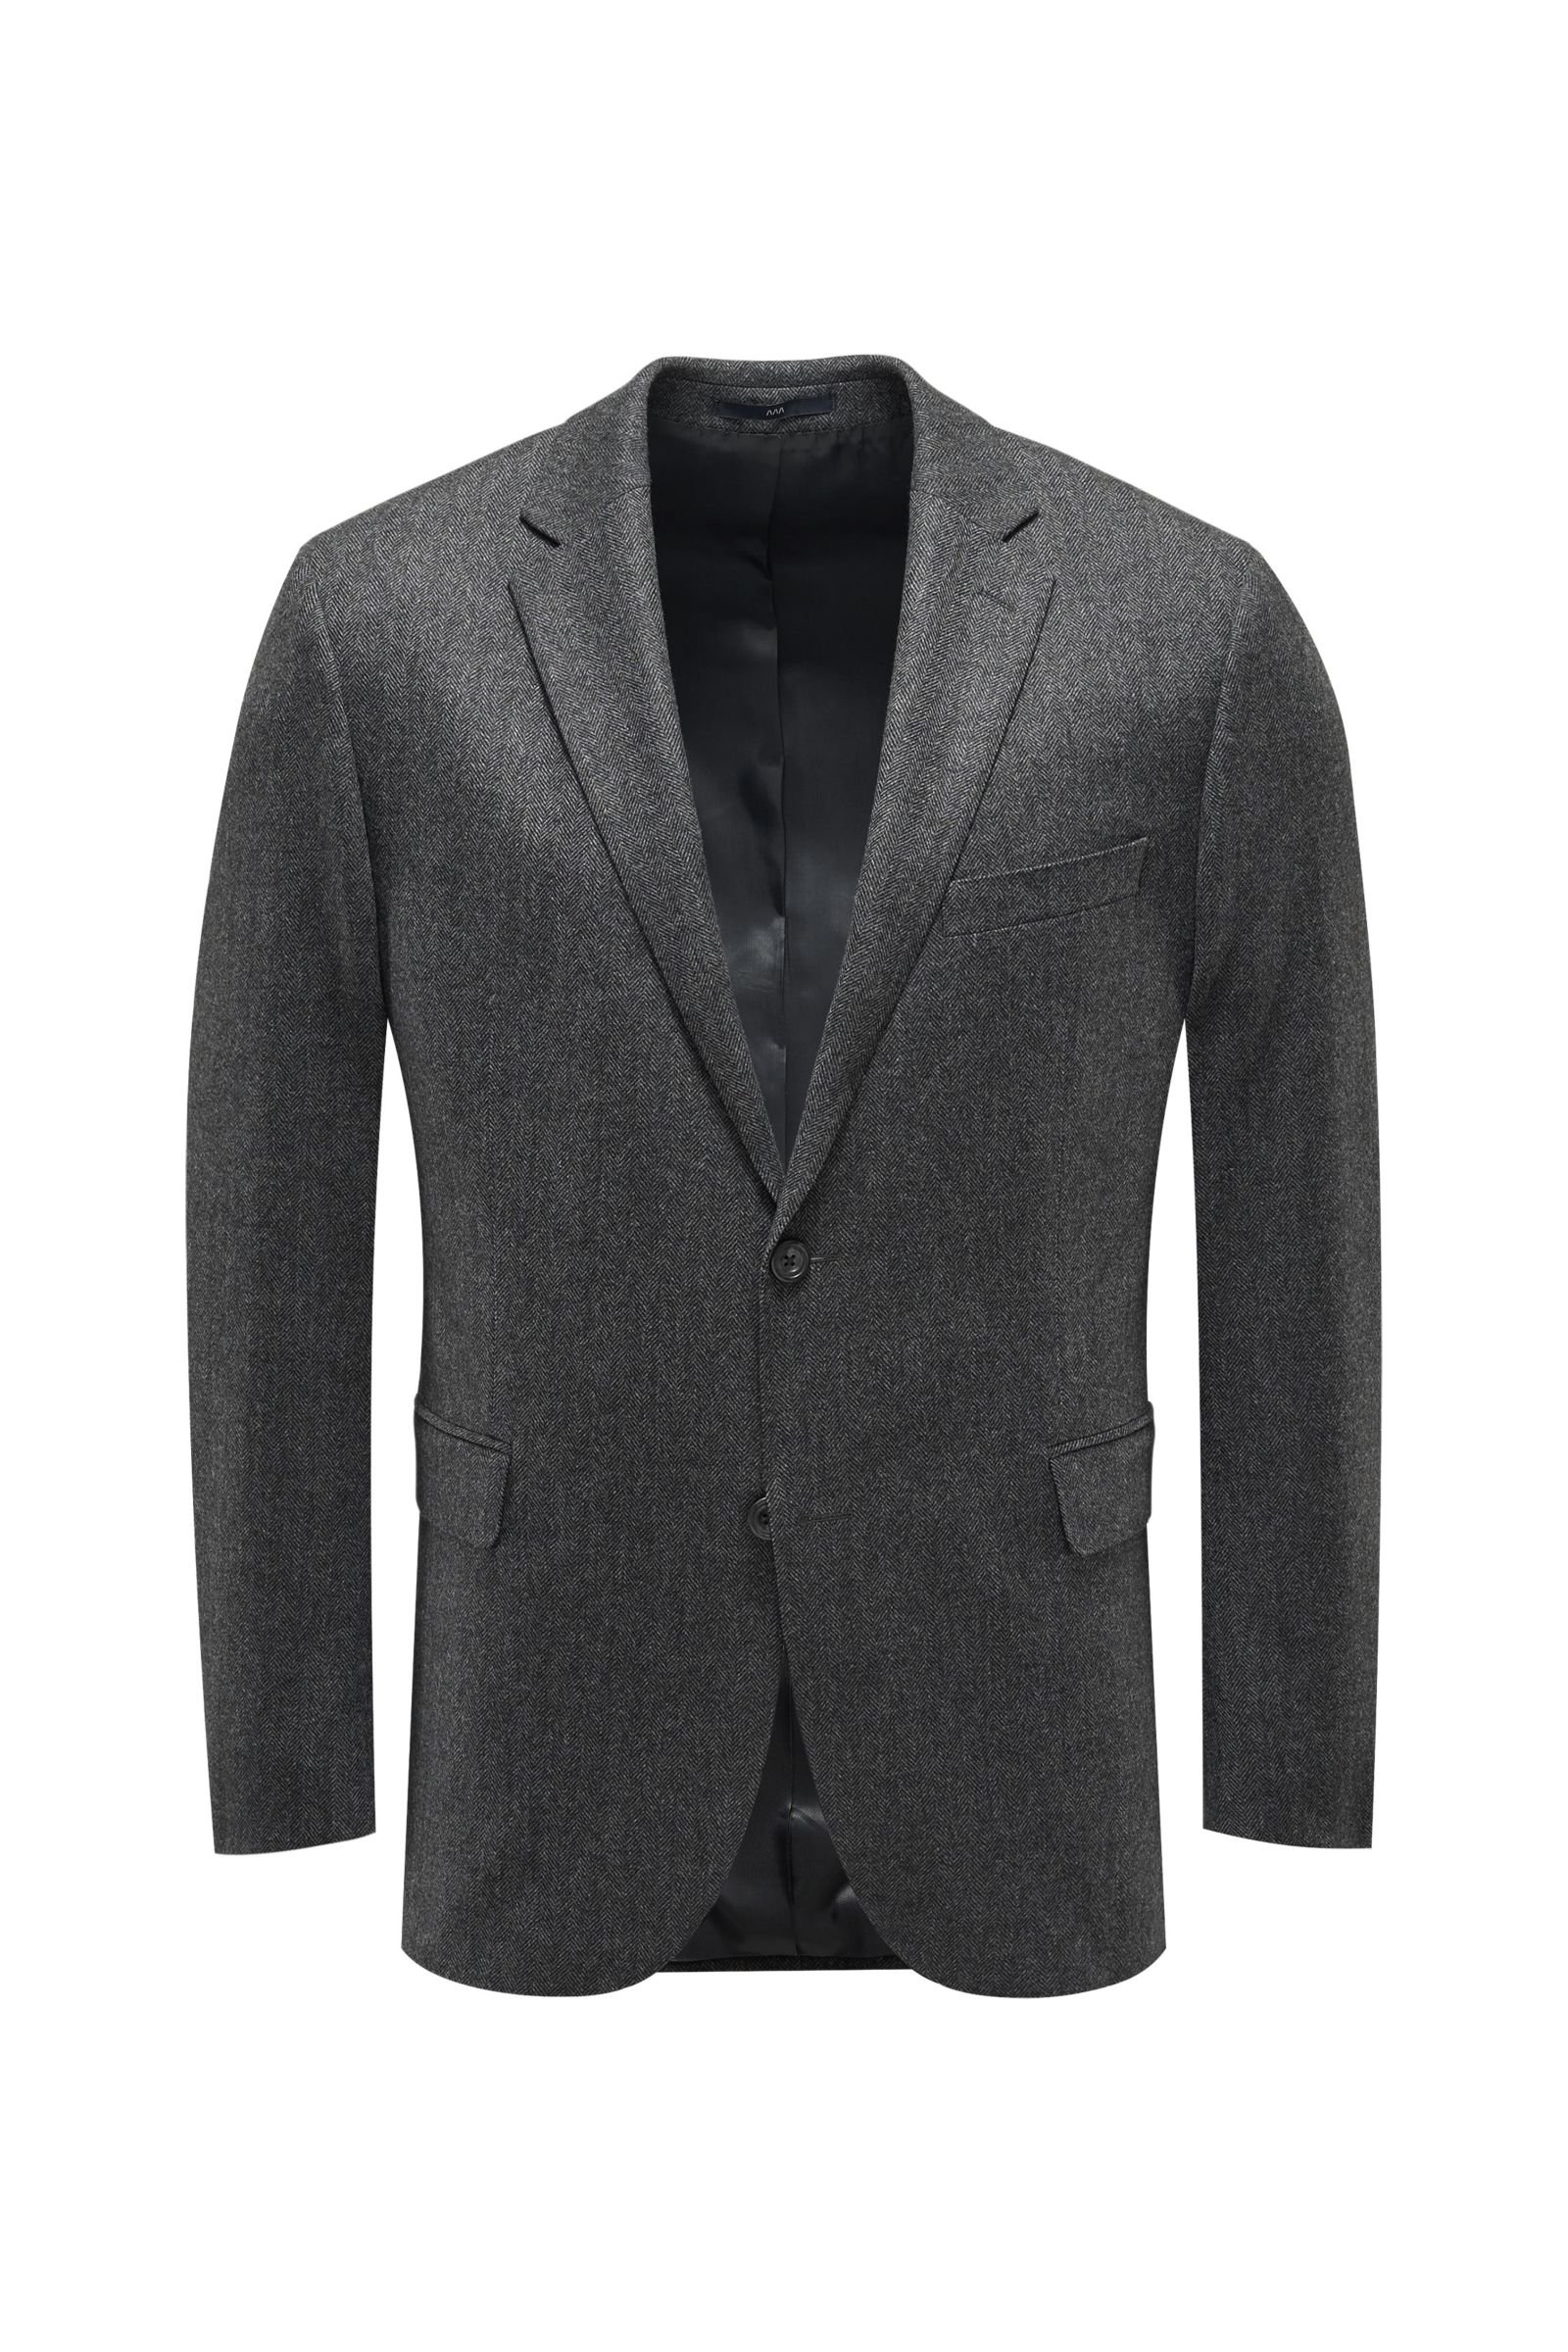 Smart-casual jacket 'Sean' dark grey checked